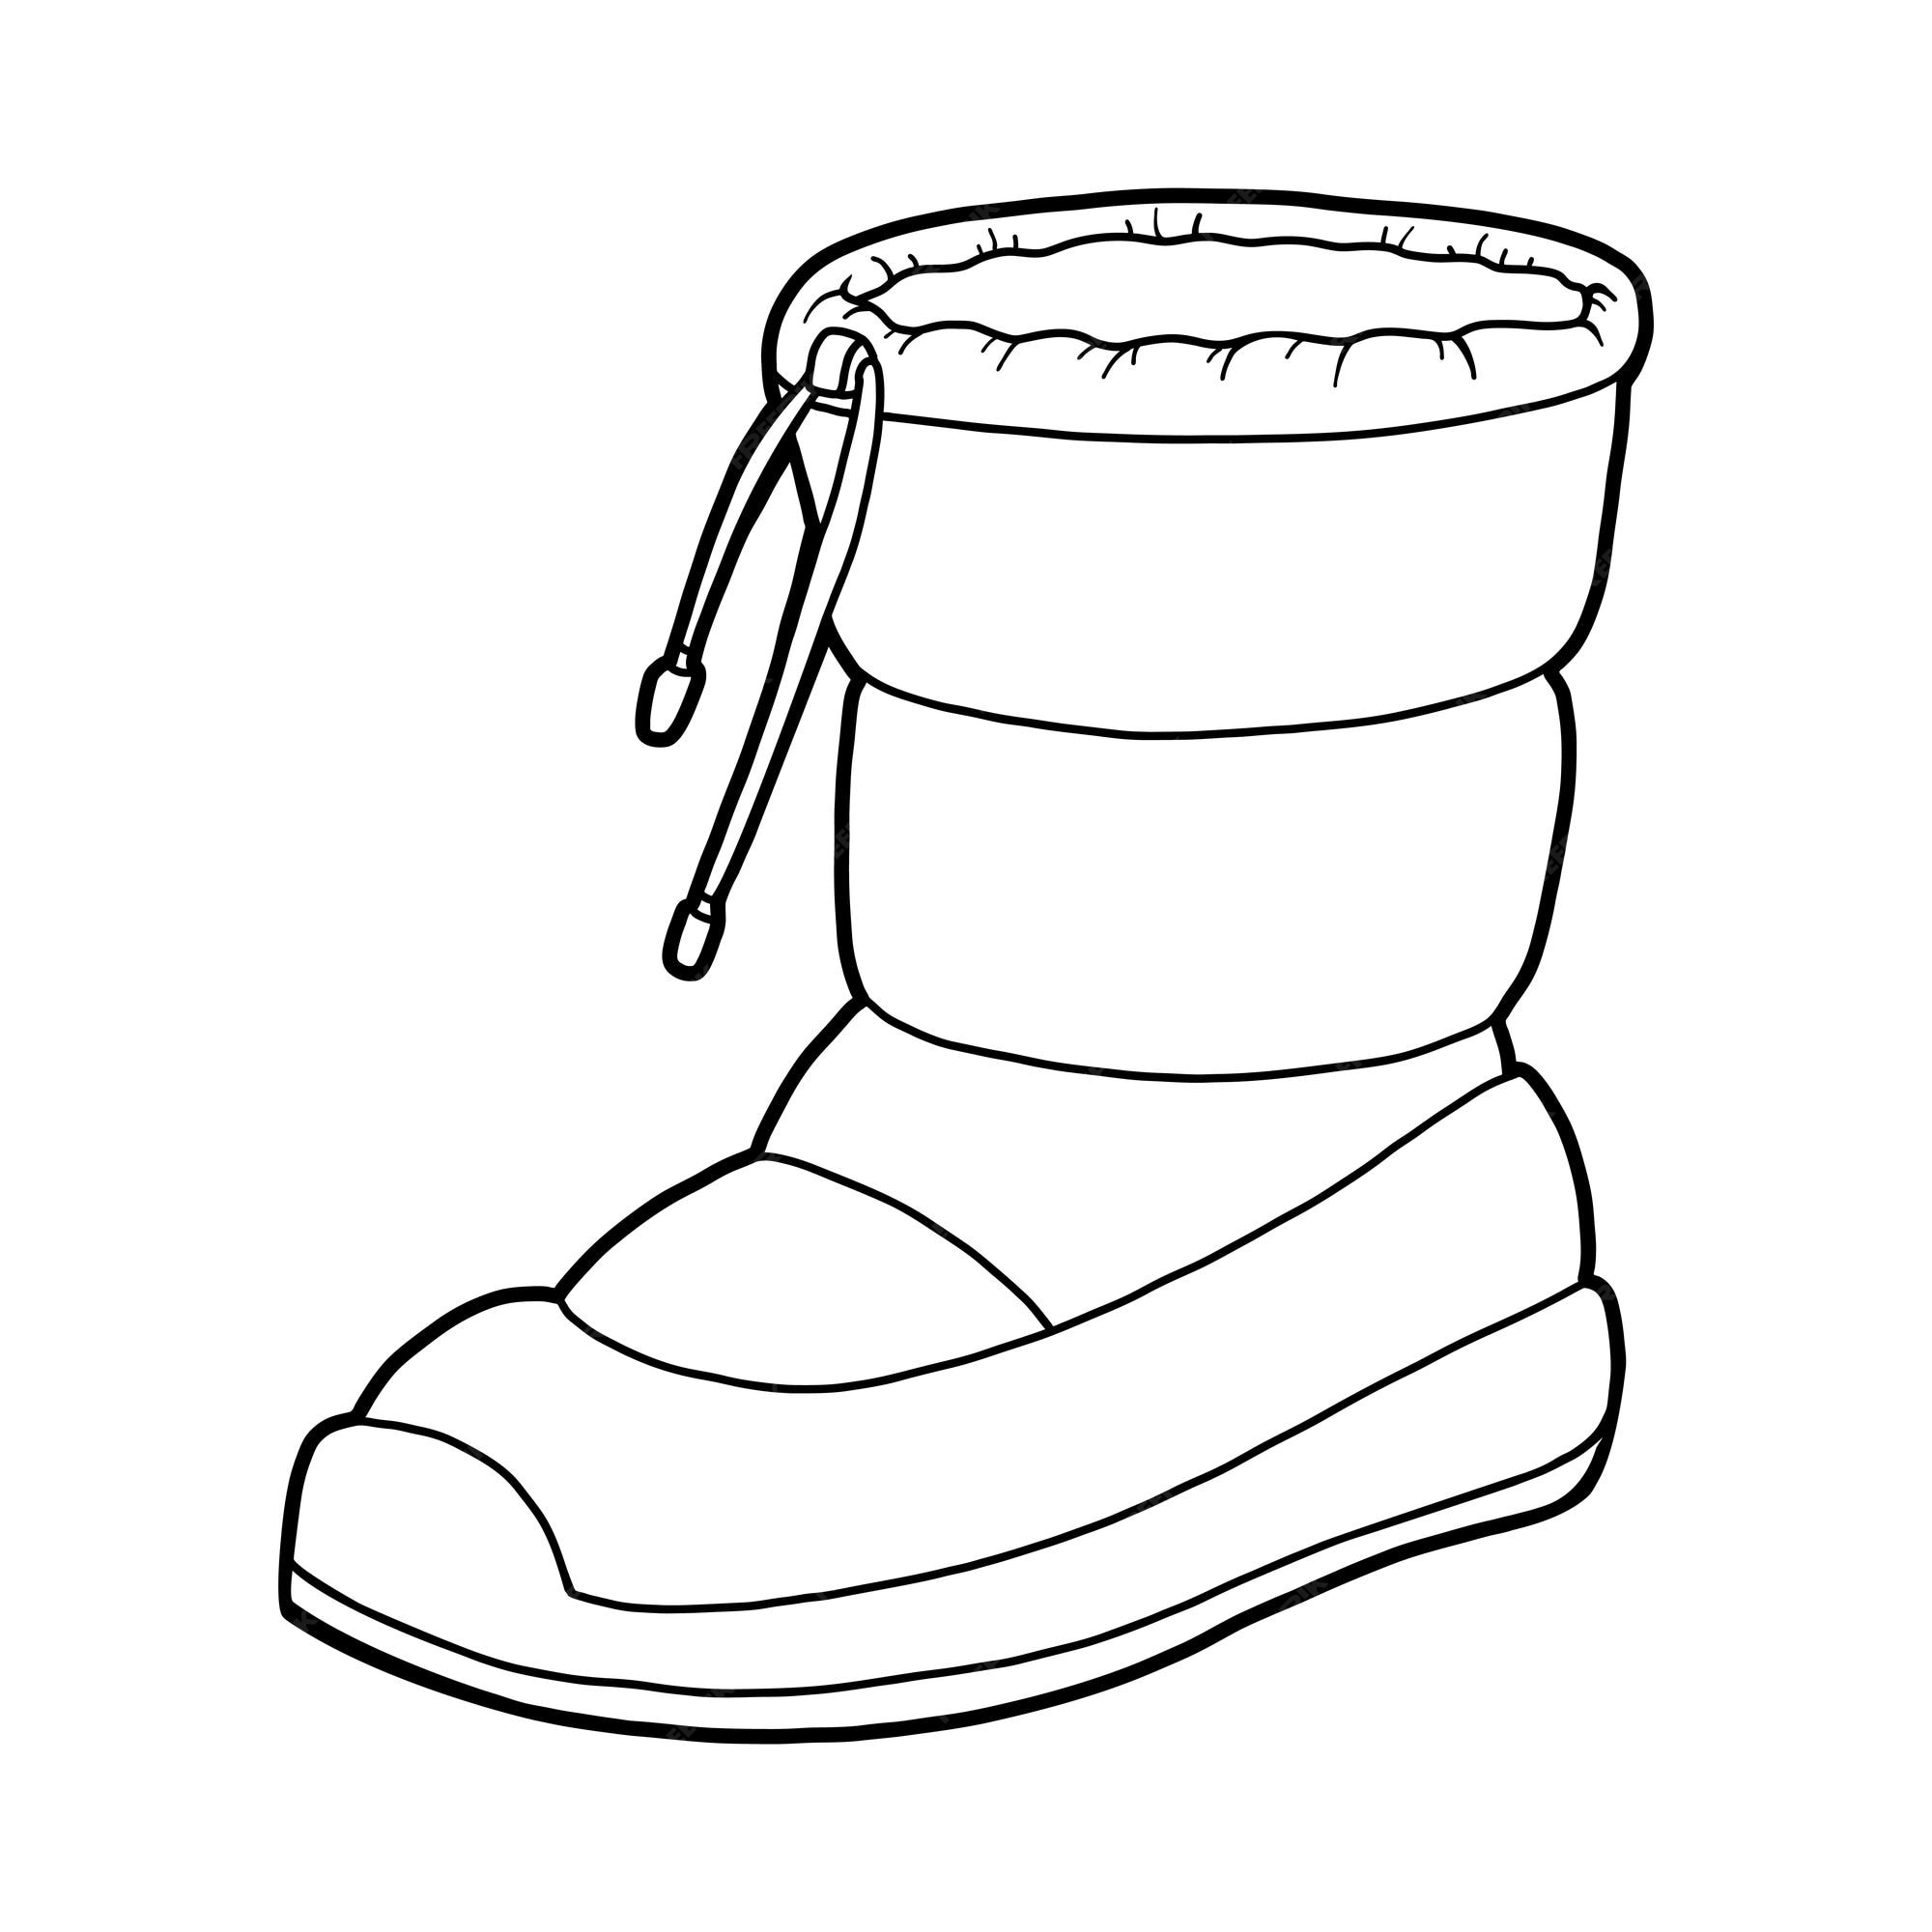 Libro para colorear colecciãn de zapatos de dibujos animados bota de nieve impermeable vector premium